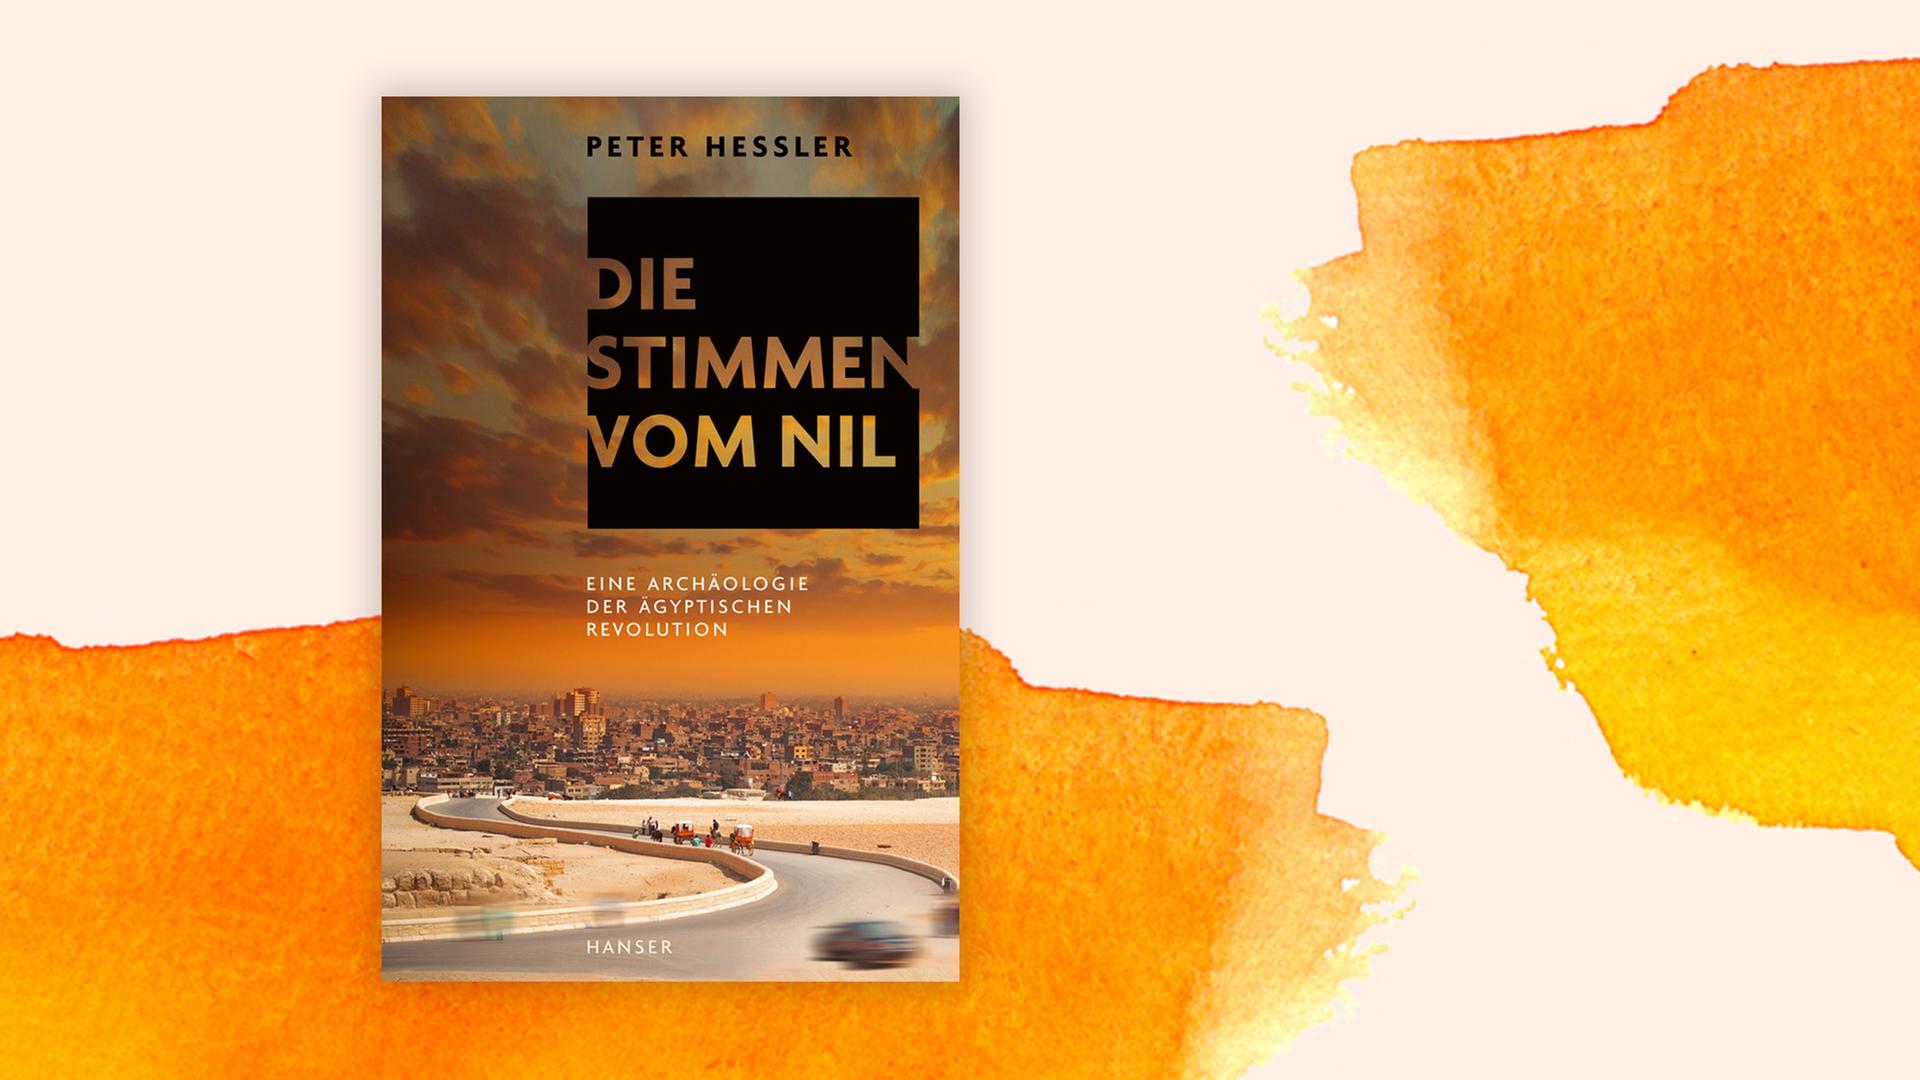 Das Buchcover "Die Stimmen vom Nil" von Peter Hessler ist vor einem grafischen Hintergrund zu sehen.